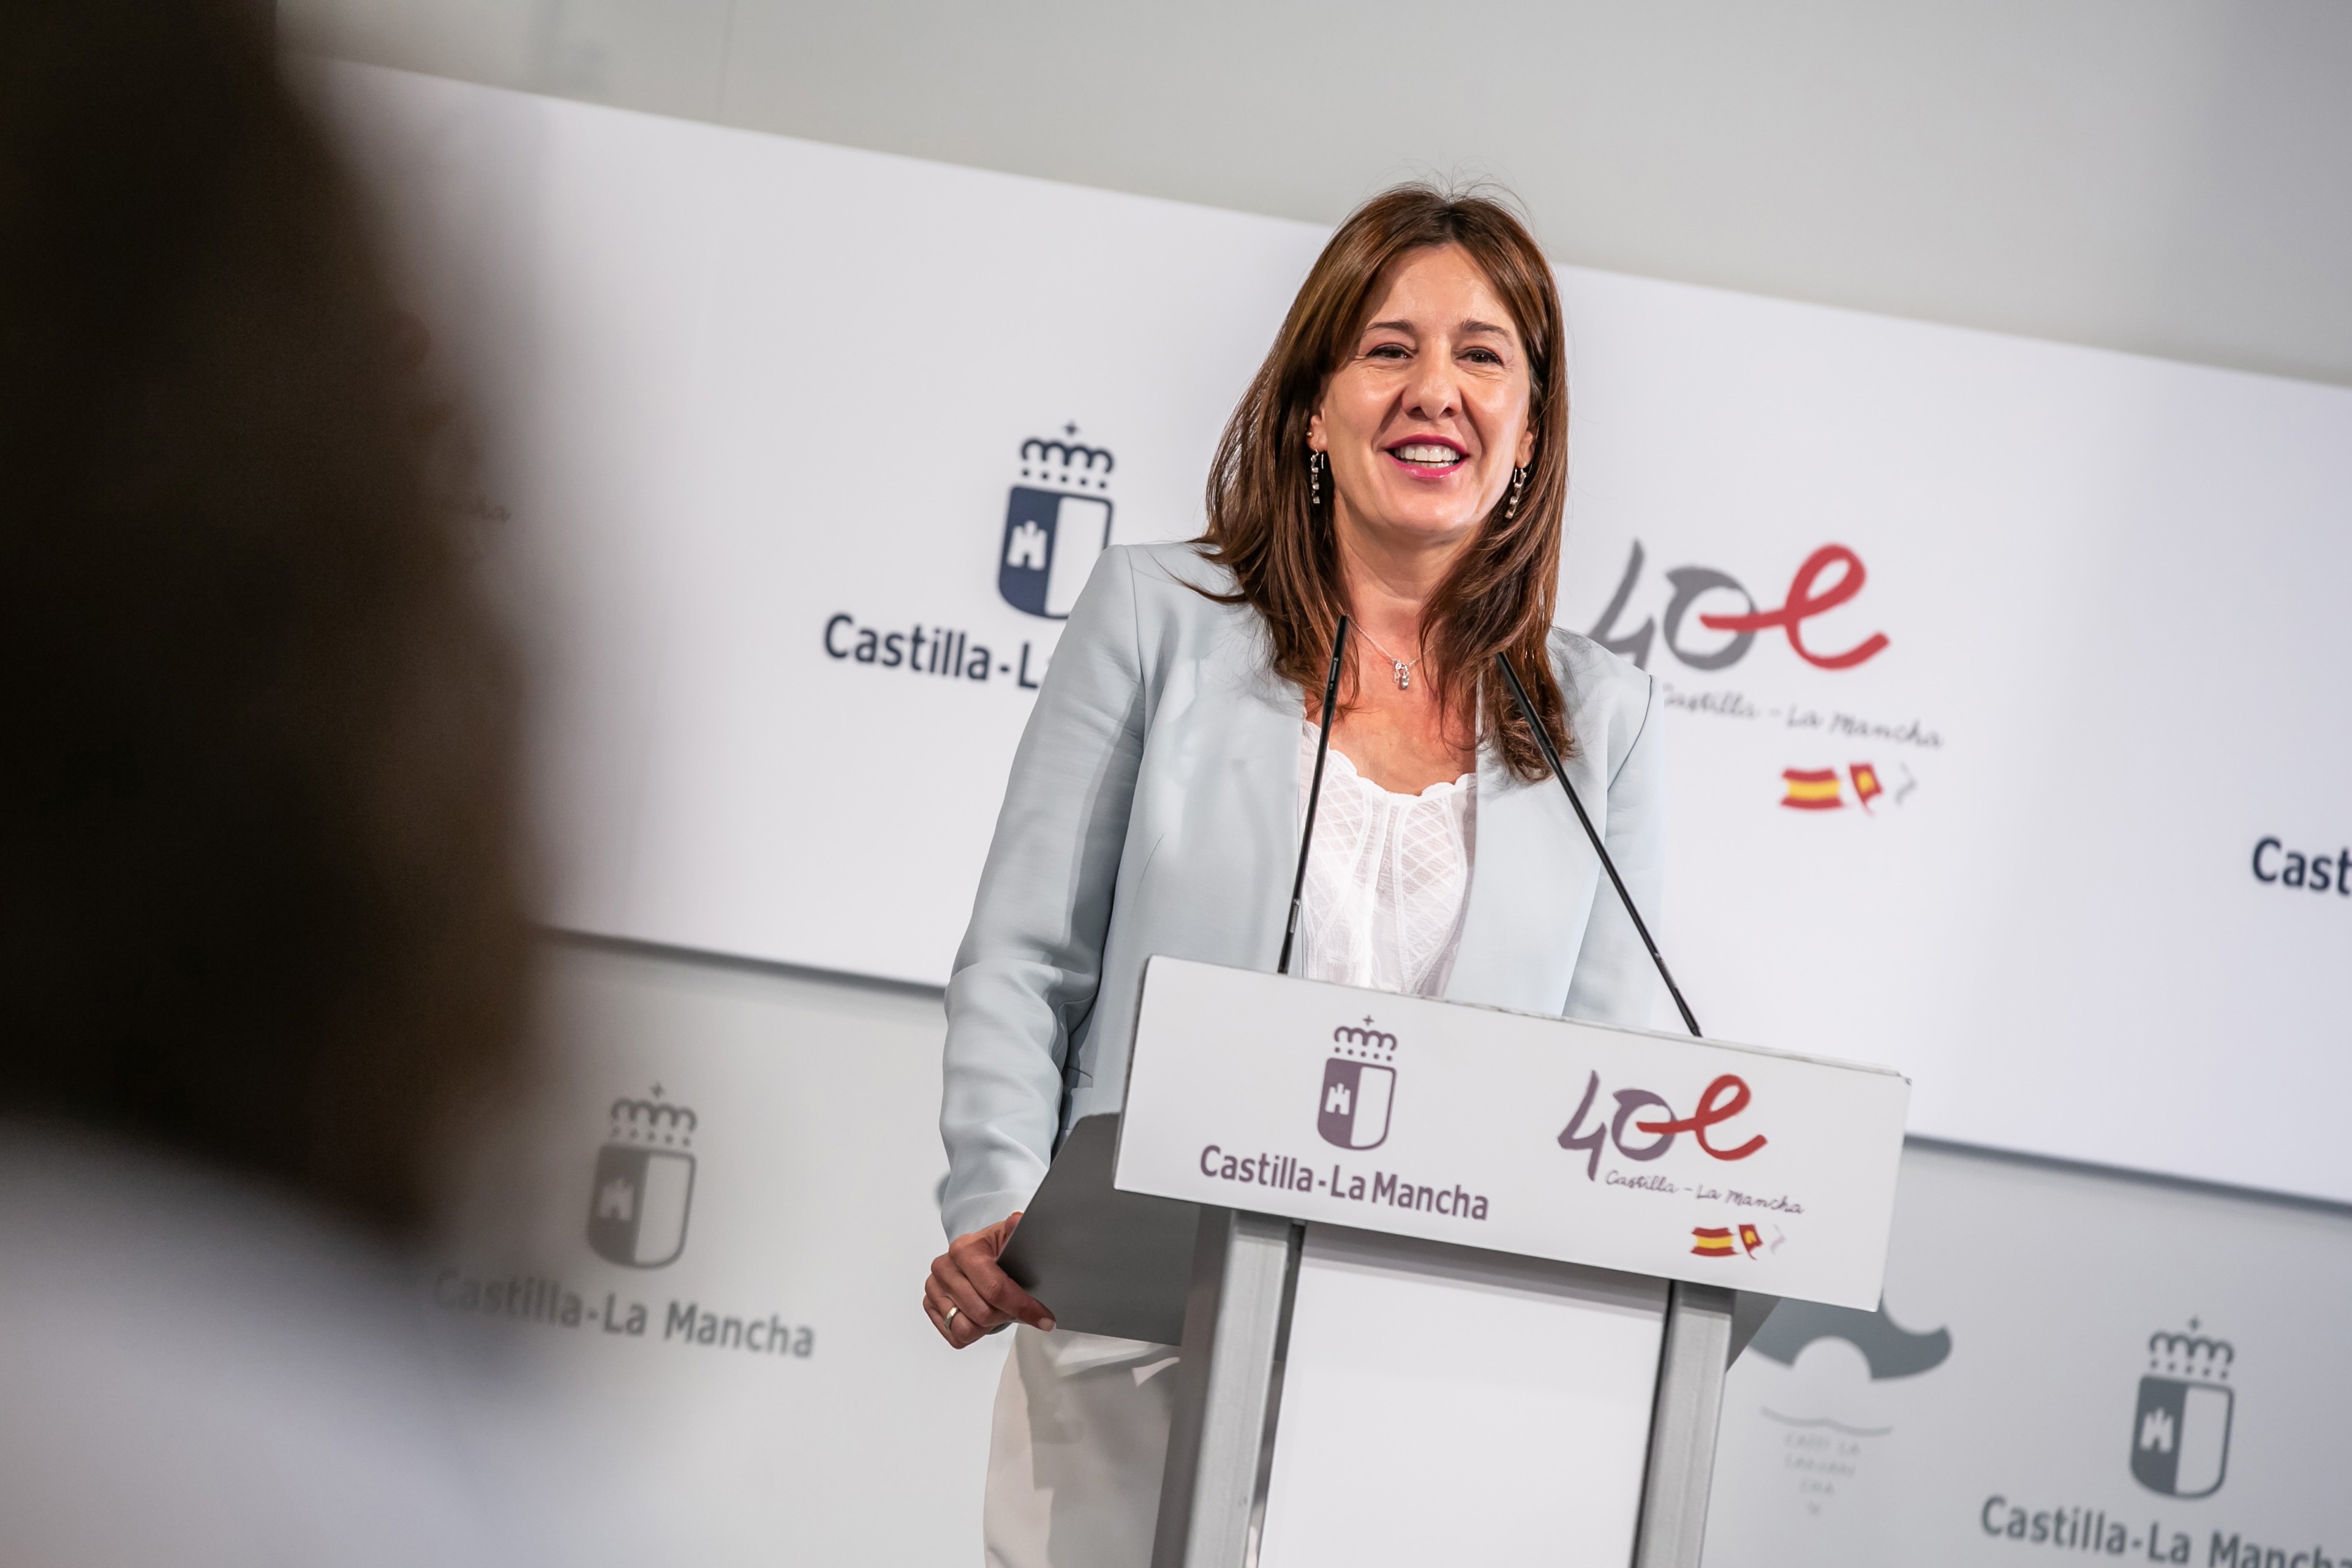 La consejera de Igualdad y portavoz del Gobierno regional, Blanca Fernández, comparece en rueda de prensa para informar sobre los acuerdos del Consejo de Gobierno.